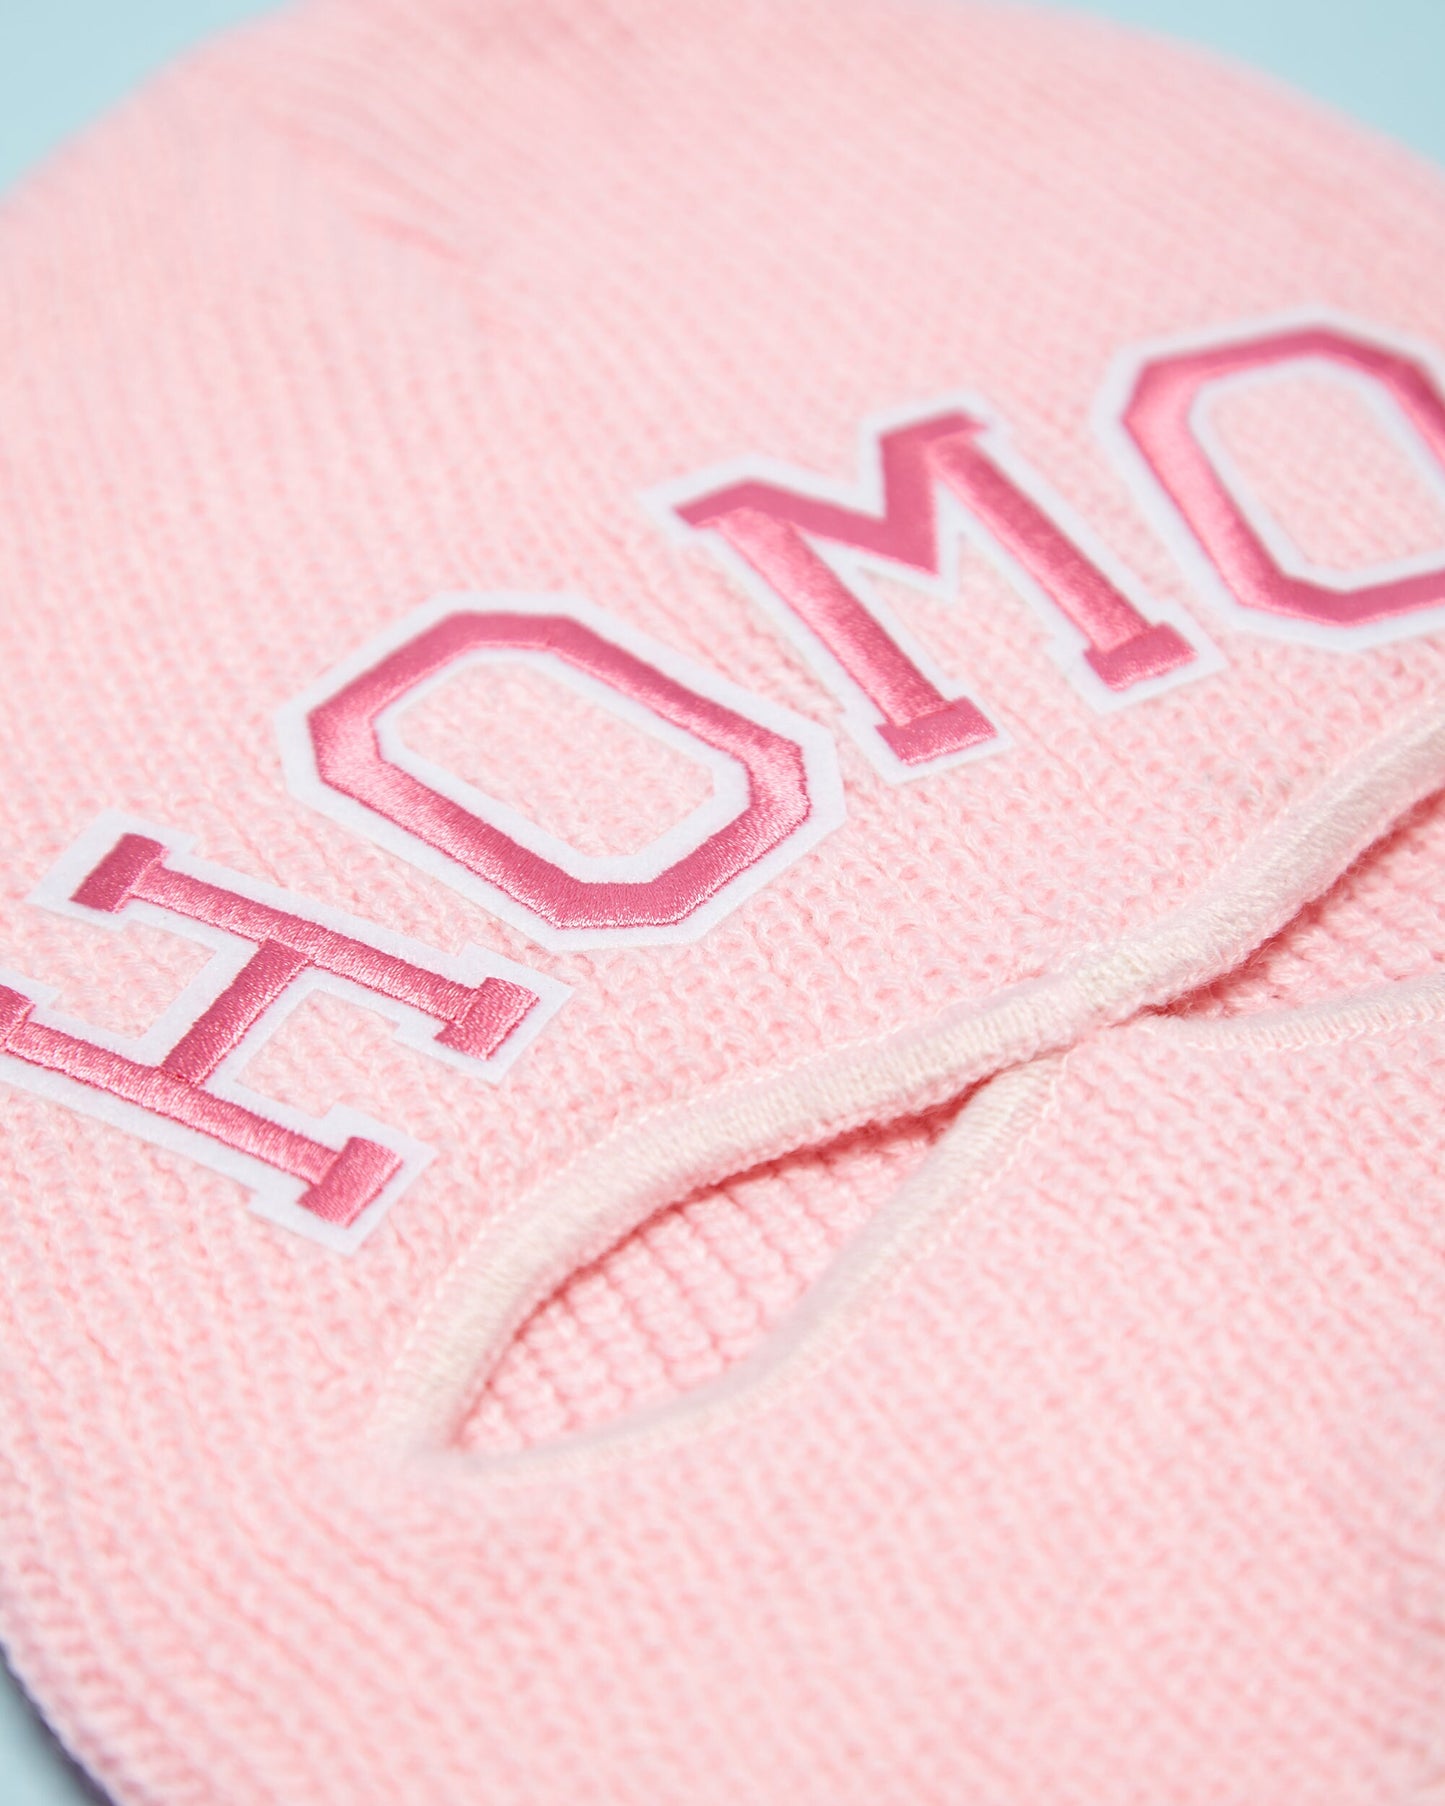 HOMO Balaclava - Pink | One size fits all. – HOMOLONDON